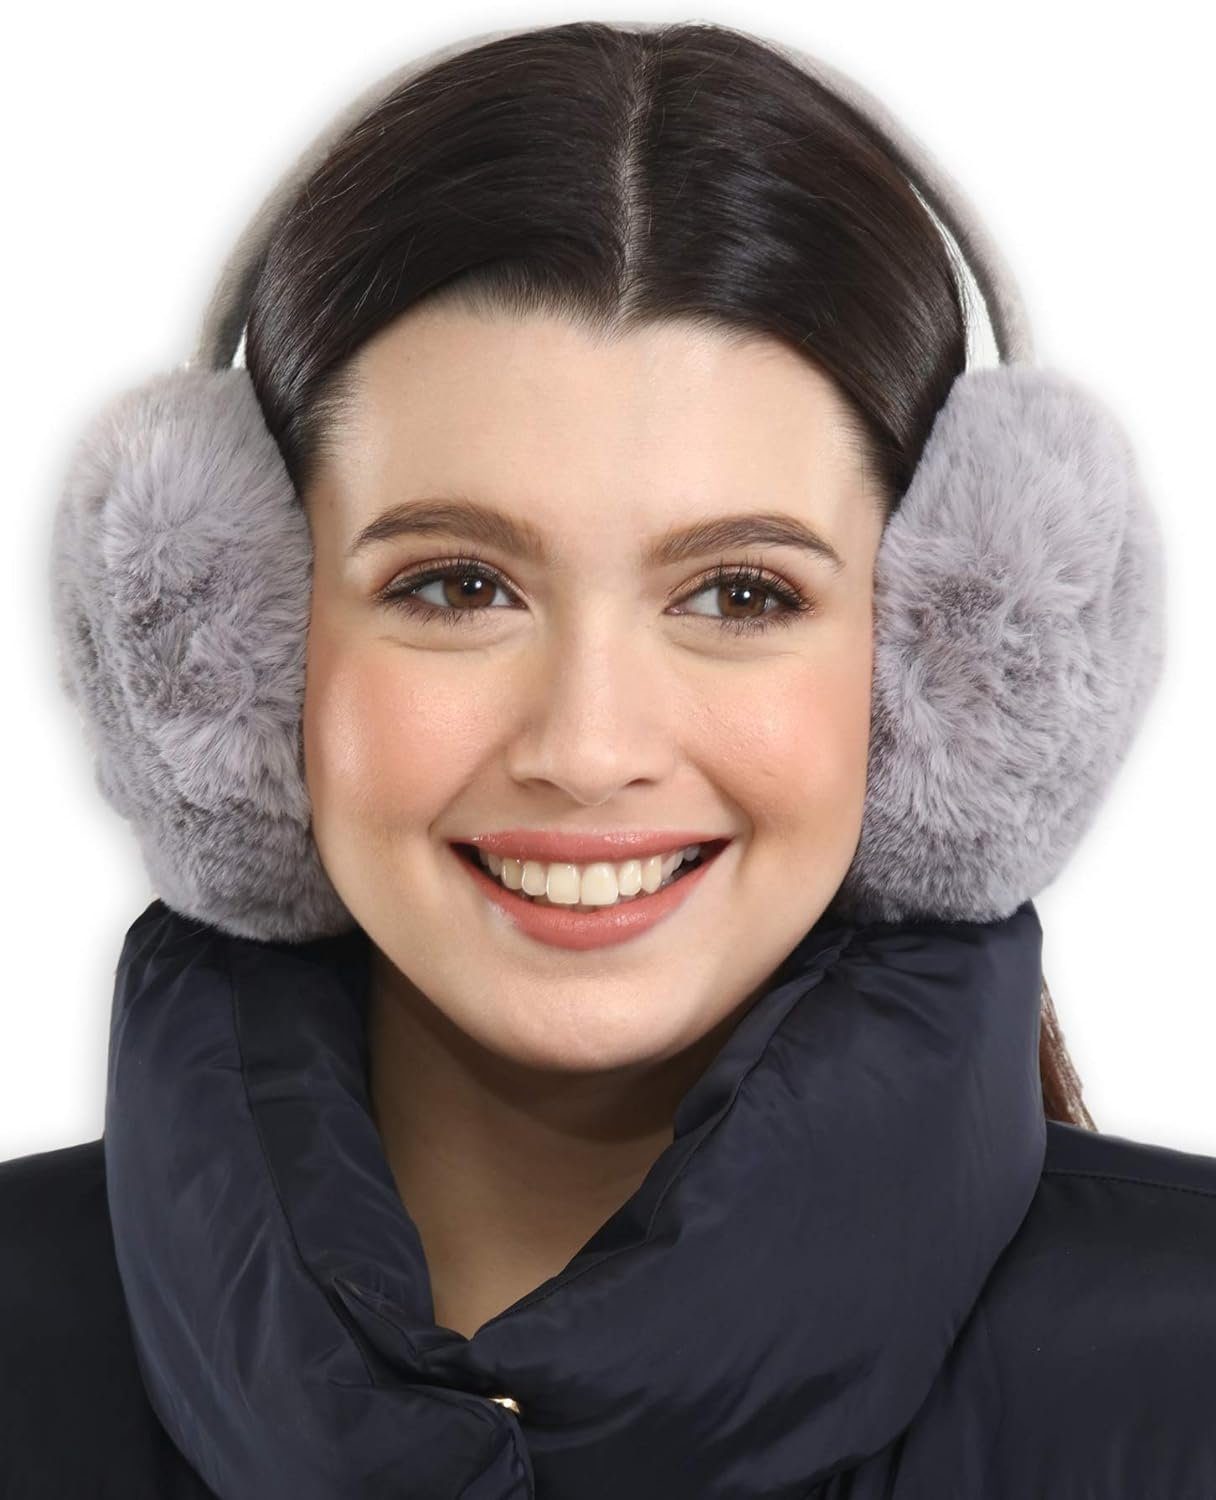 Opspring Grau für Ohrenwärmer Ohrenschützer,Winter-Ohrenwärmer,Ohrenschützer Wetter kaltes